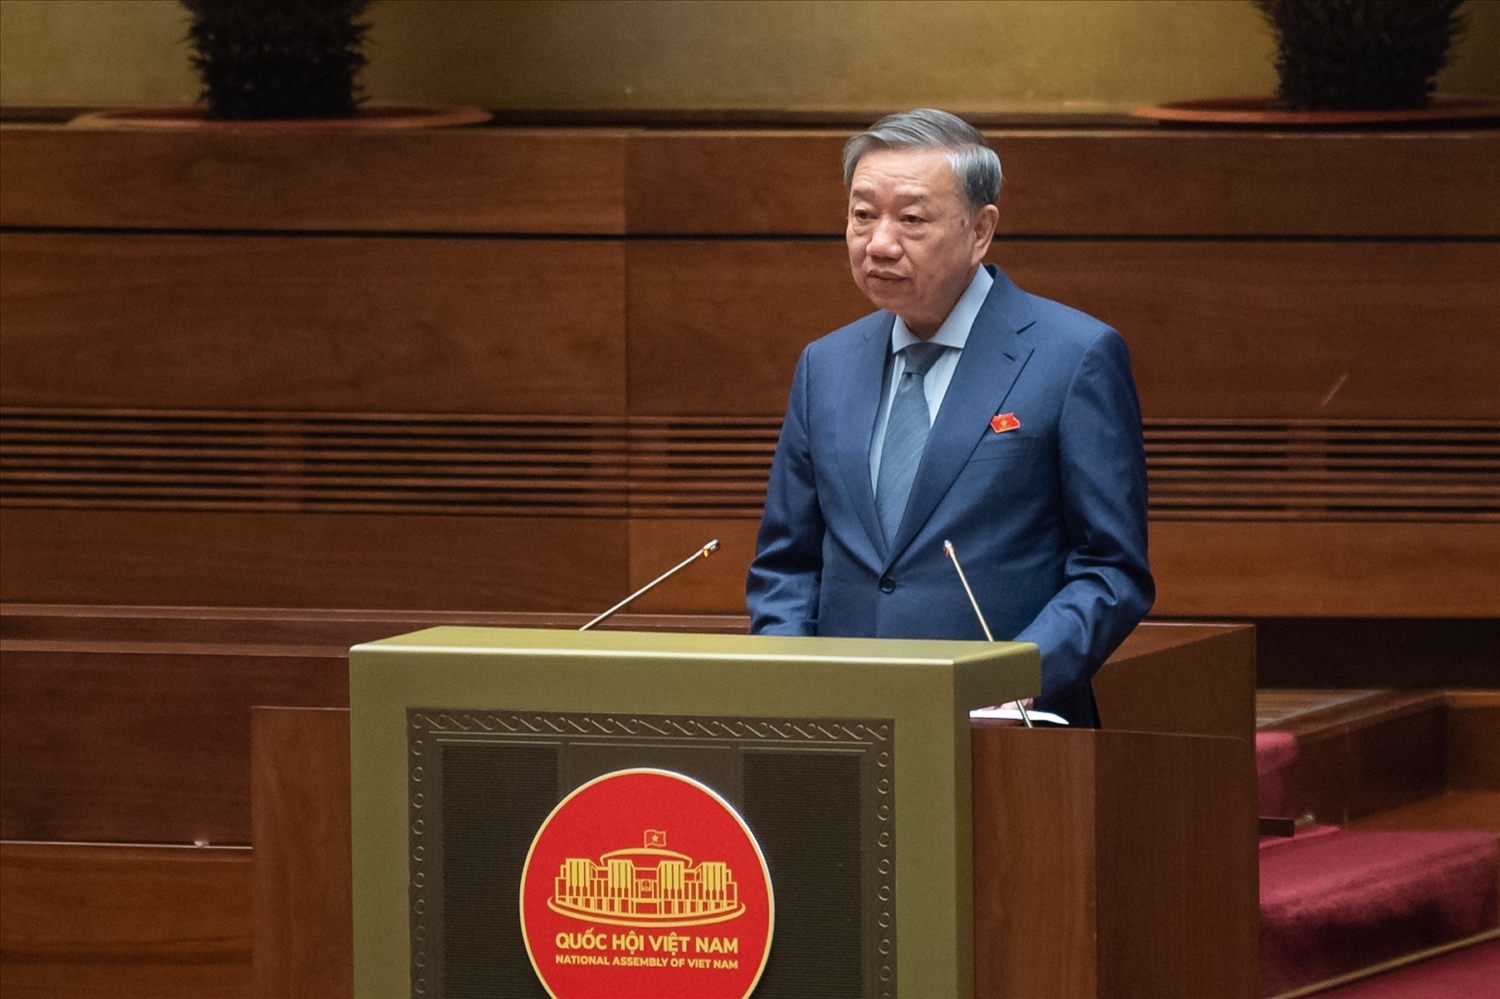 Bộ trưởng Bộ Công an Tô Lâm, thừa ủy quyền của Thủ tướng Chính phủ trình bày Báo cáo